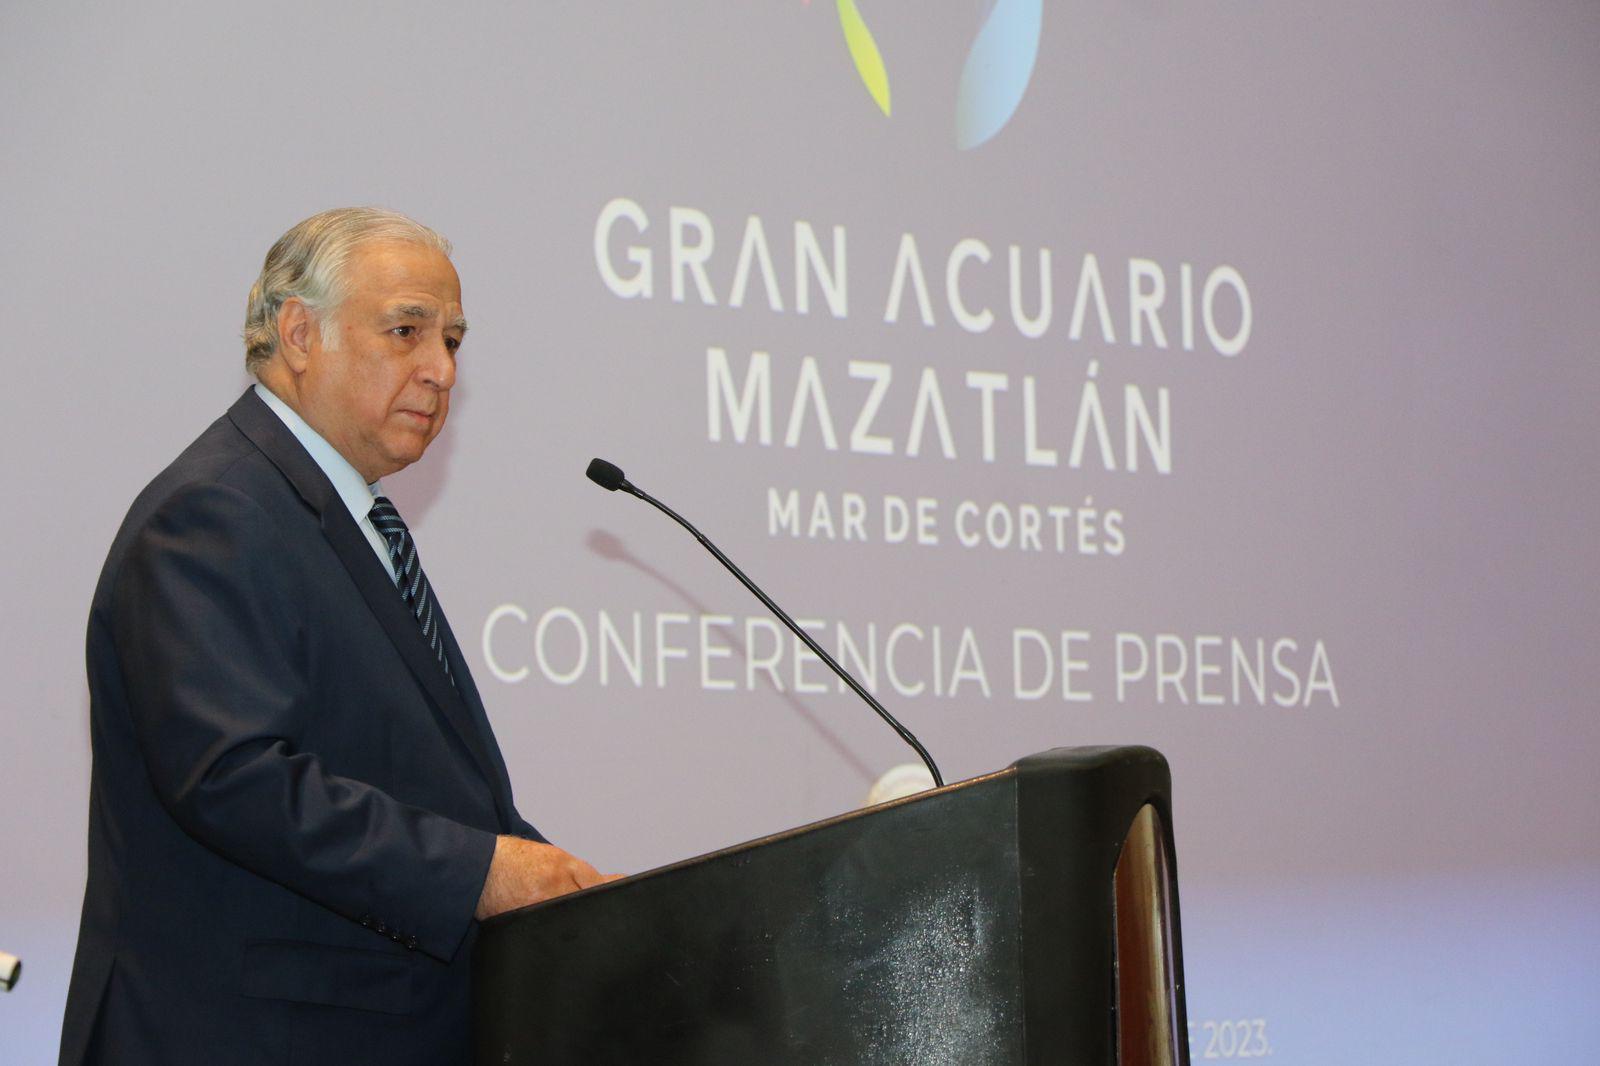 $!Gran Acuario Mazatlán Mar de Cortés revitalizará la oferta turística: Sectur